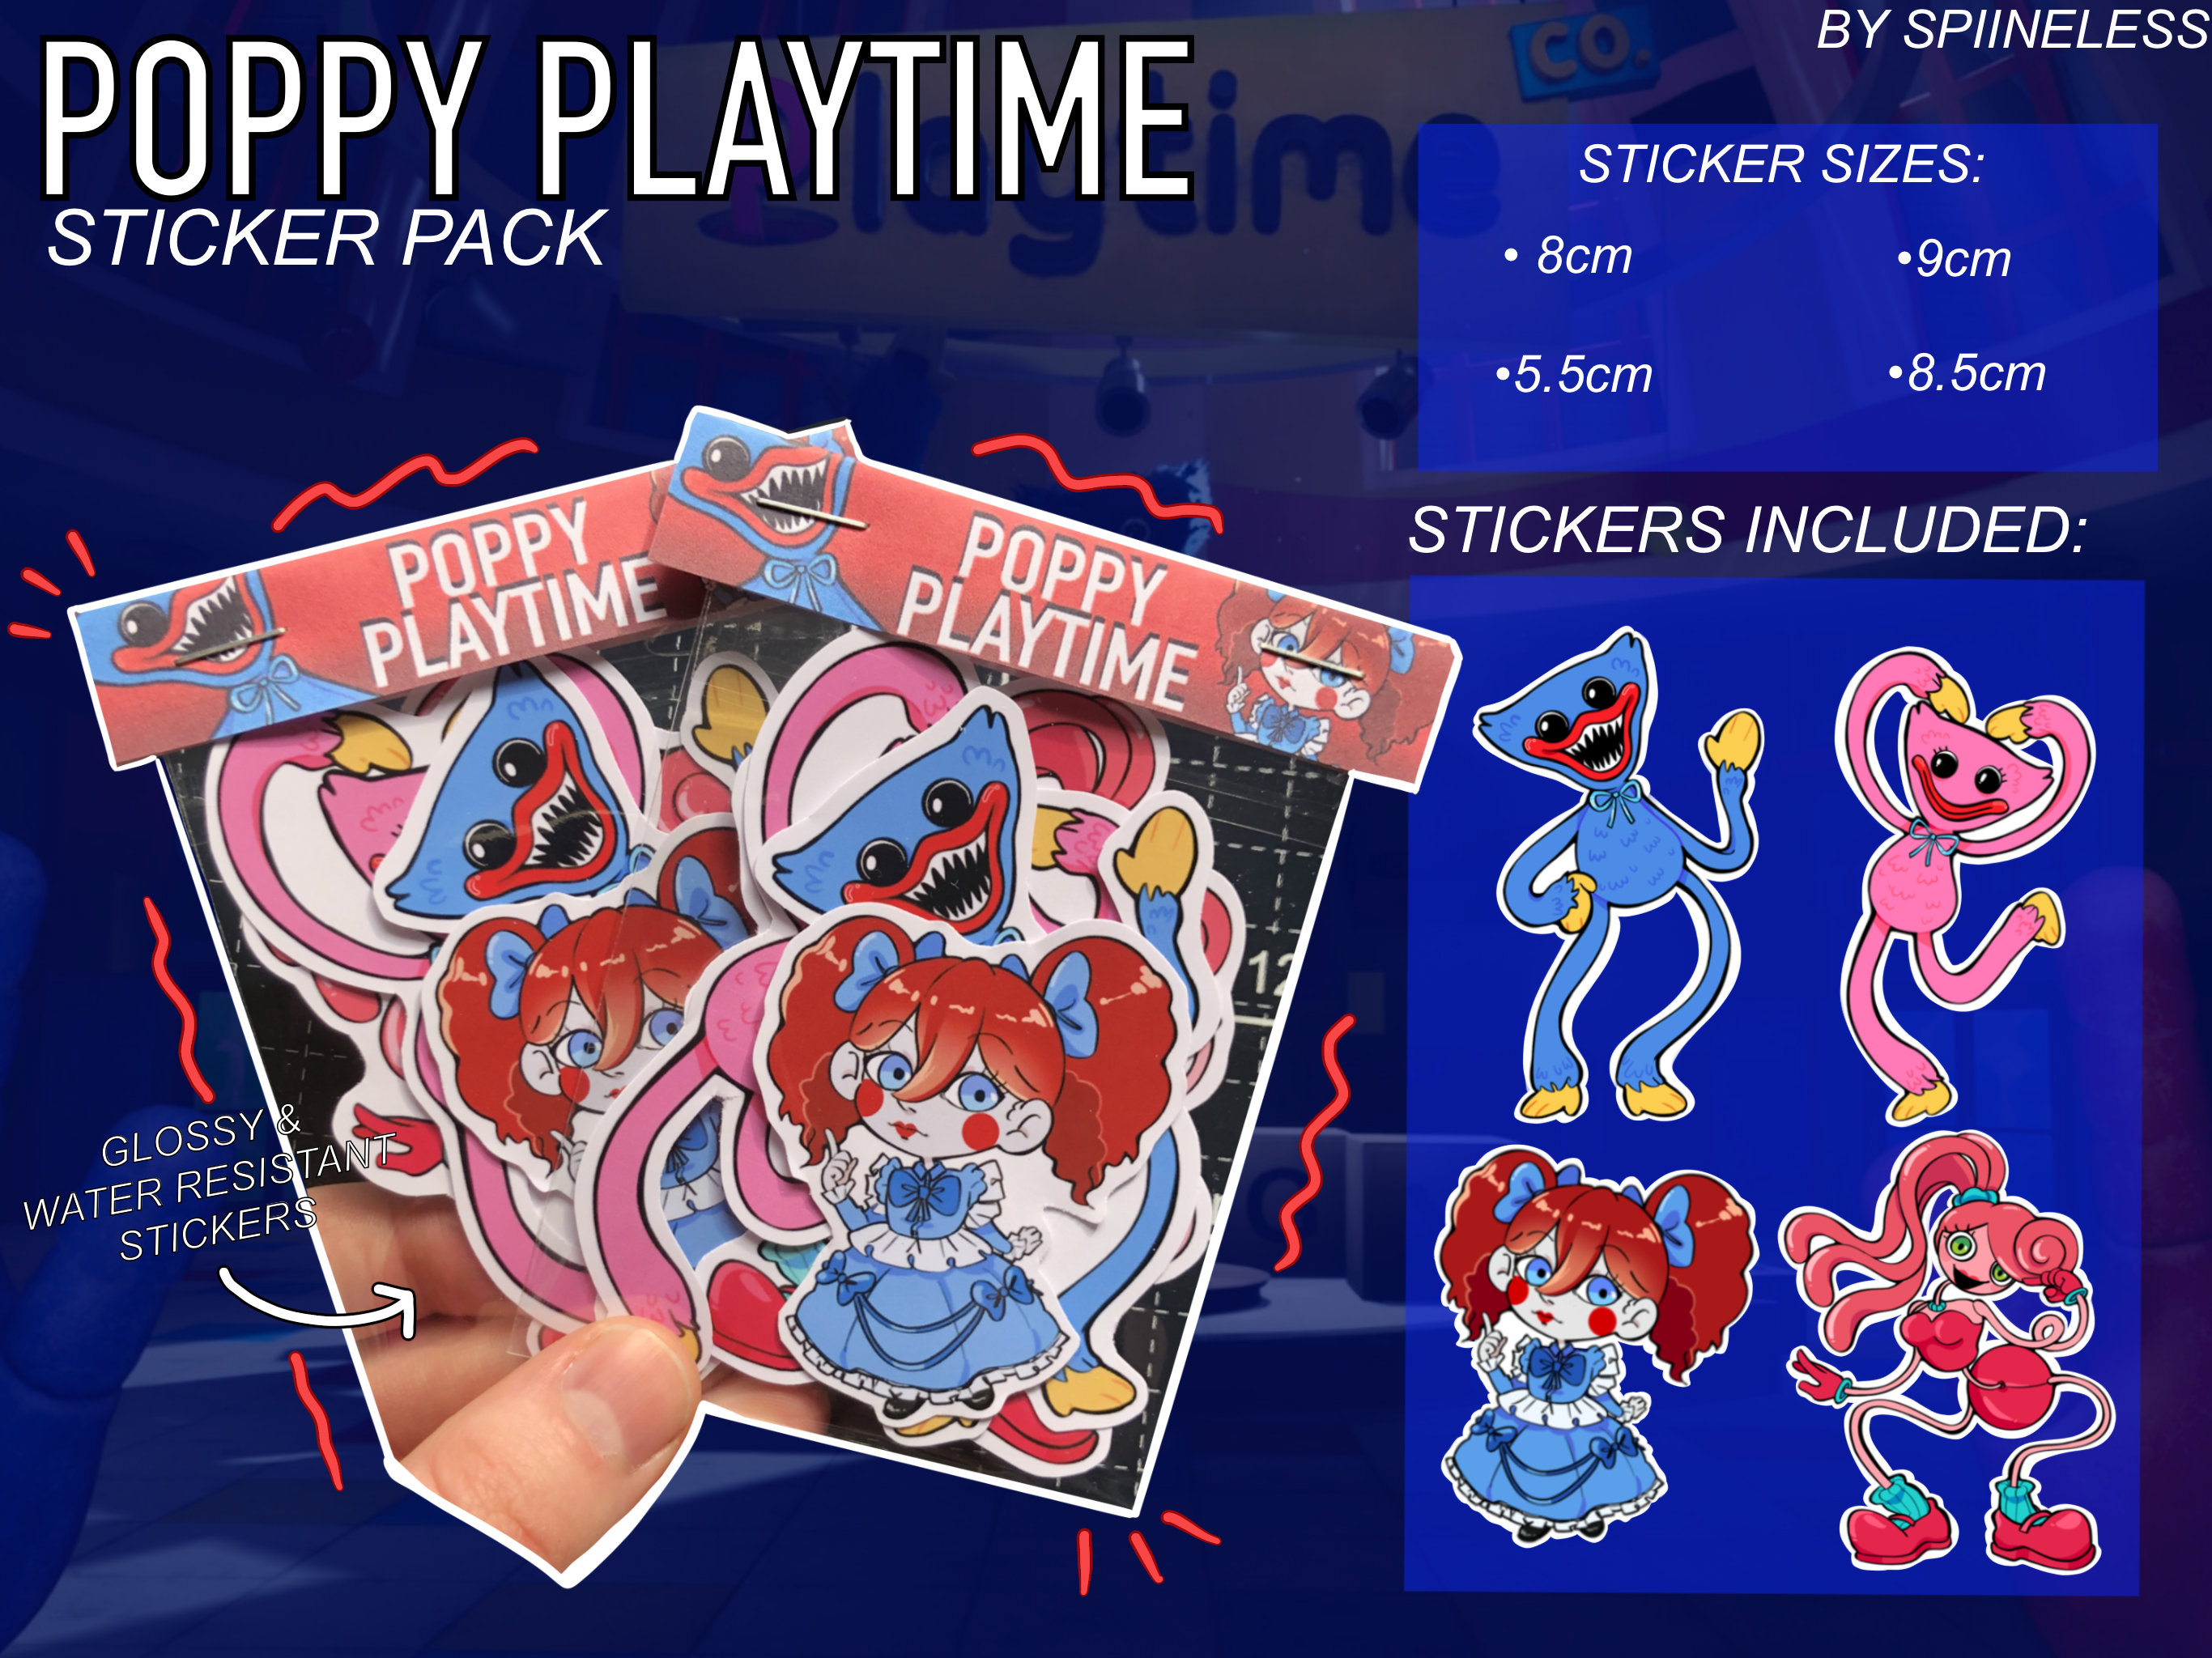 Poppy Playtime 3  Poppies, Cute pokemon wallpaper, Good horror games